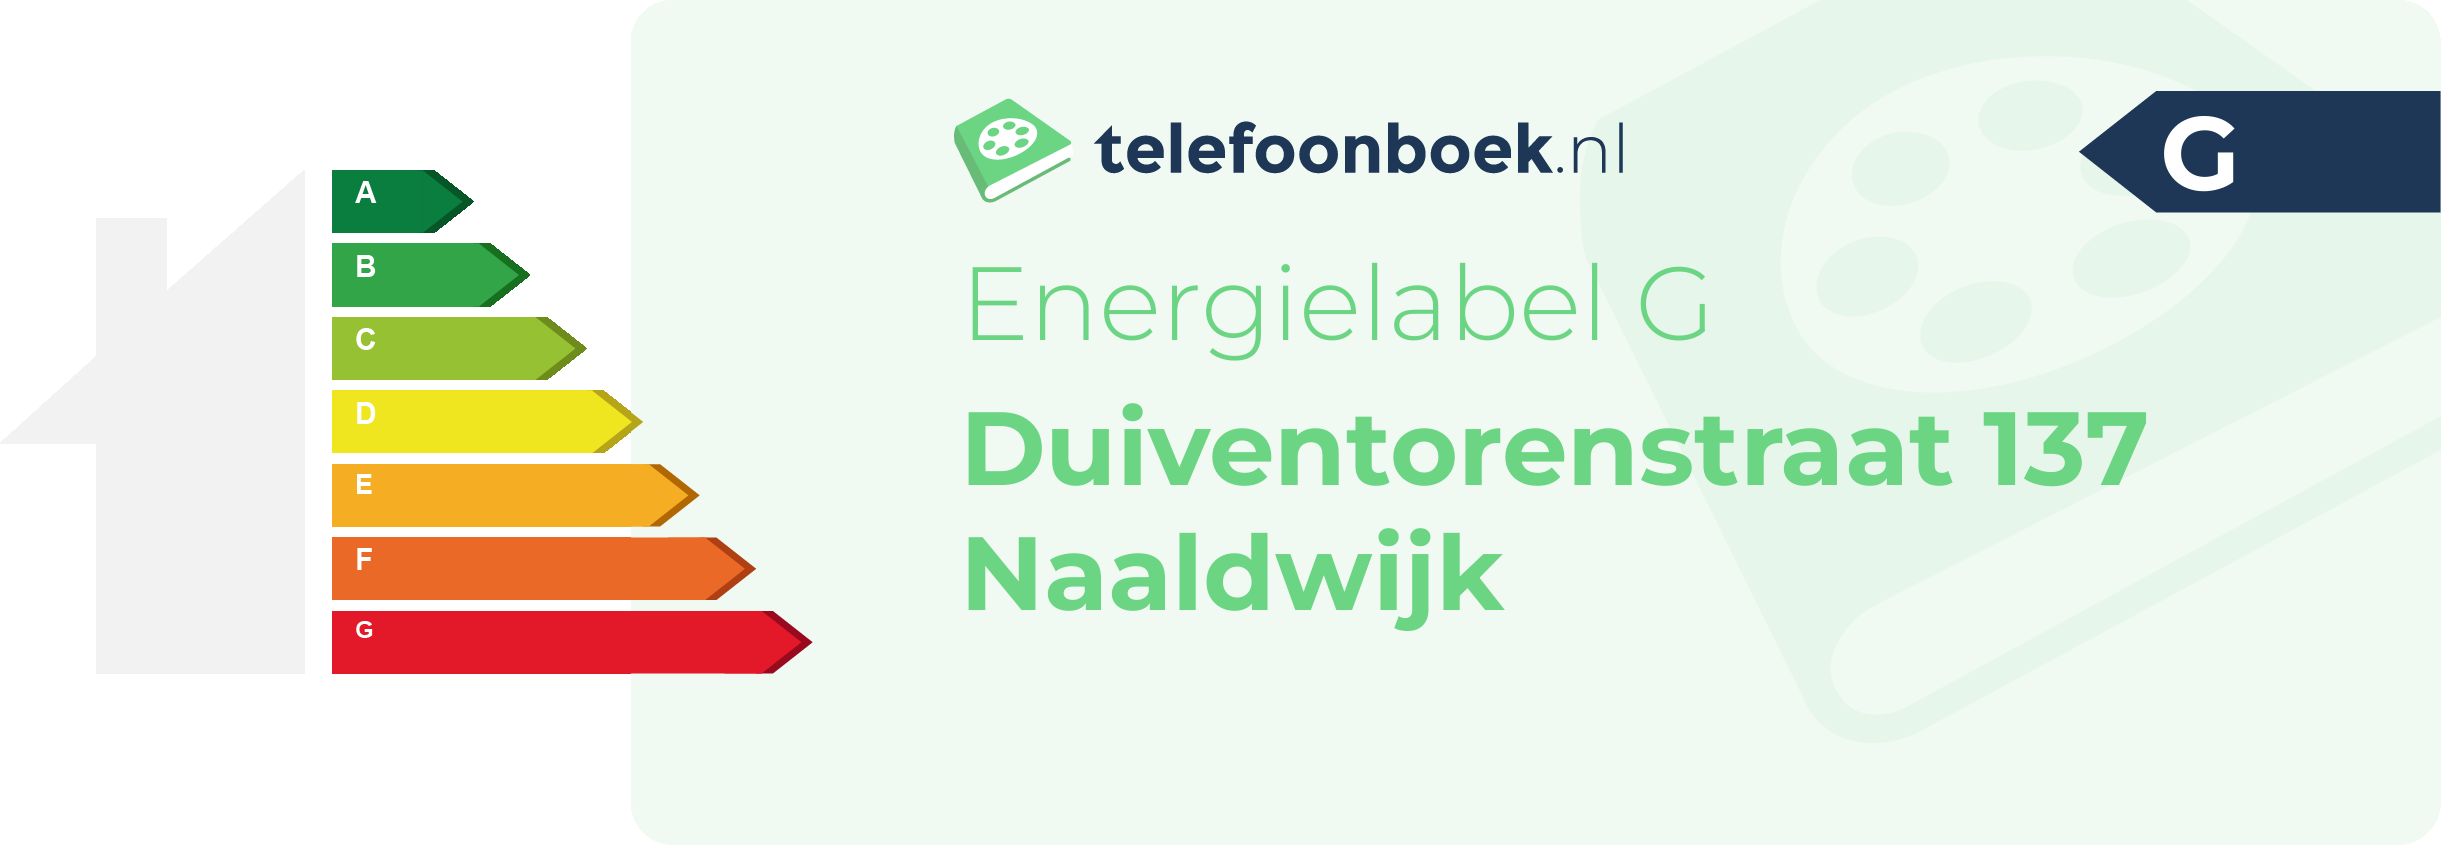 Energielabel Duiventorenstraat 137 Naaldwijk